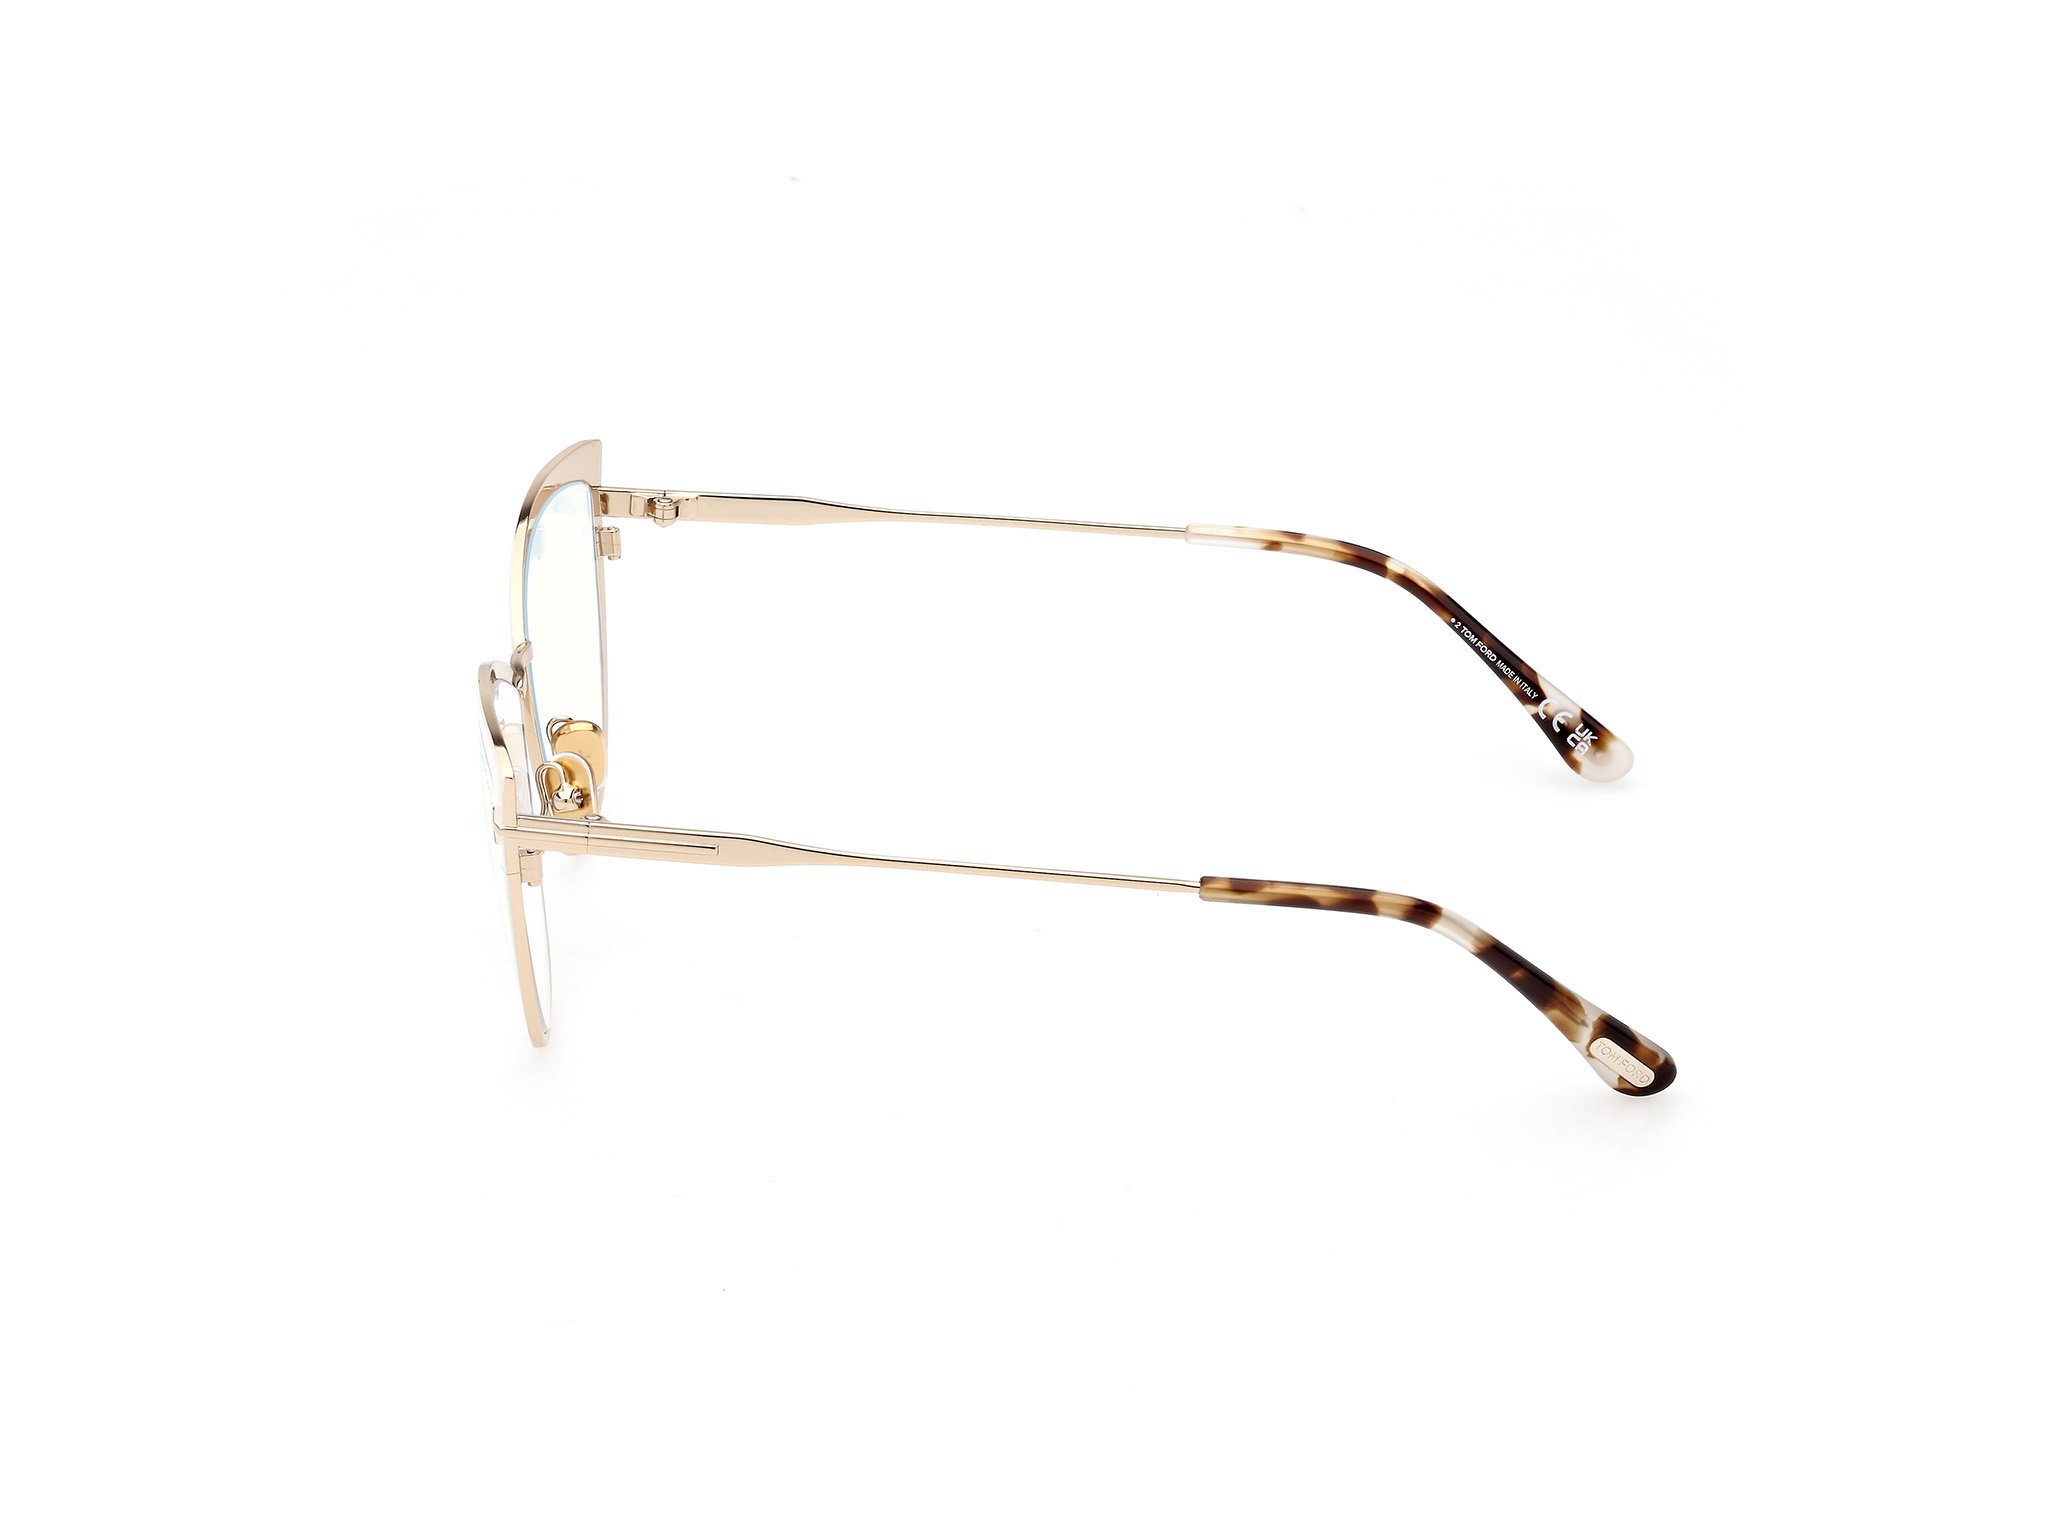 Das Bild zeigt die Korrektionsbrille FT5877-B 025 von der Marke Tom Ford in elfenbein/gold.